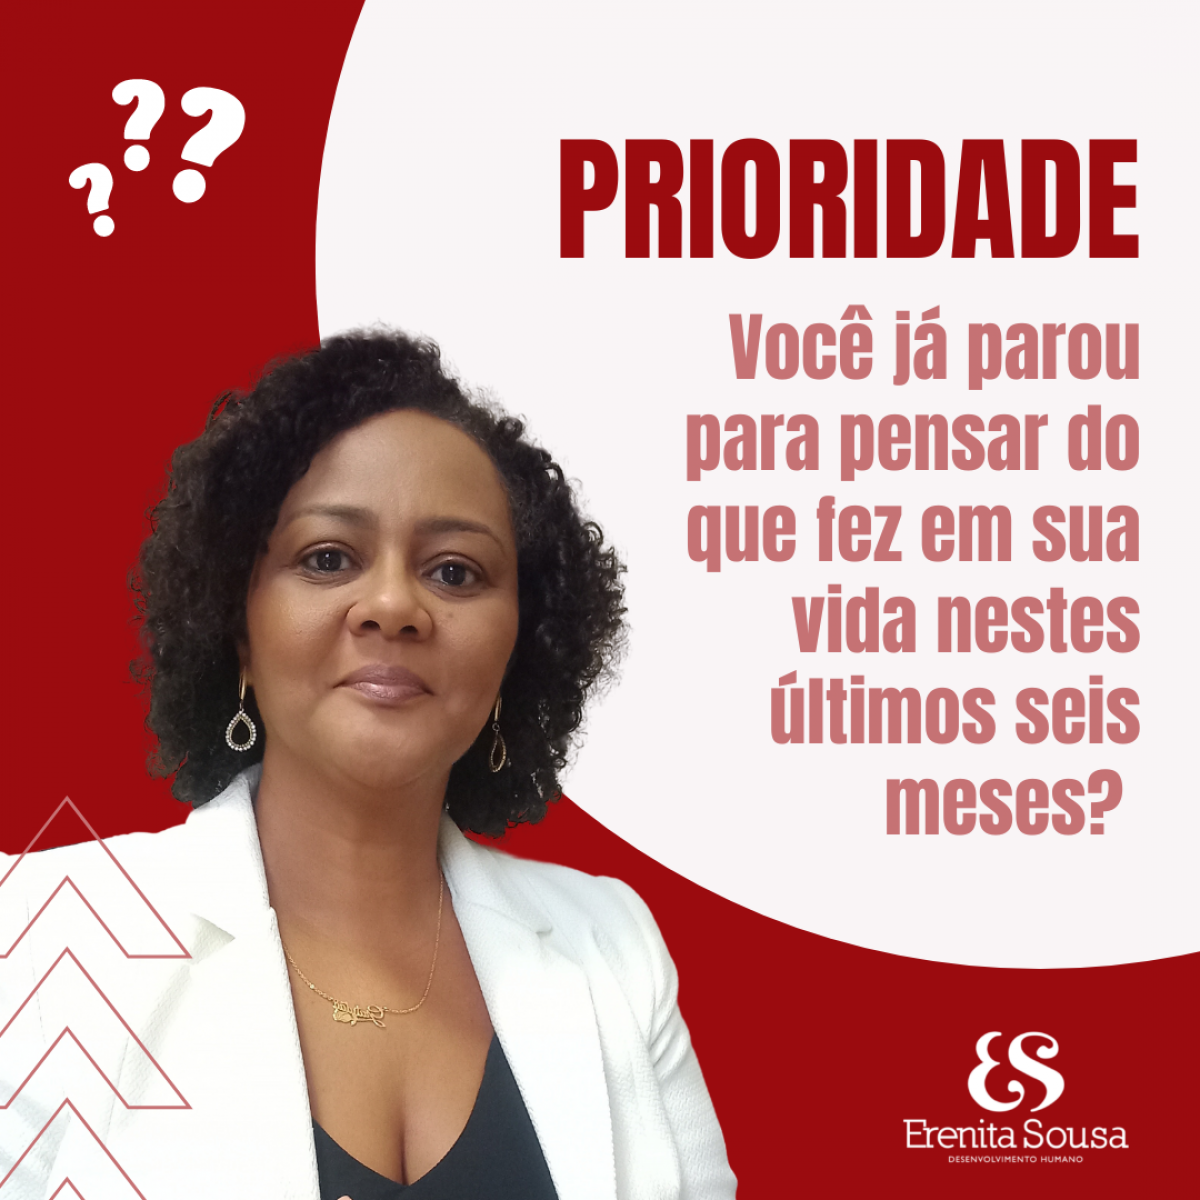 Priorize-se  ::  Por Erenita Sousa - Imagem: Divulgação